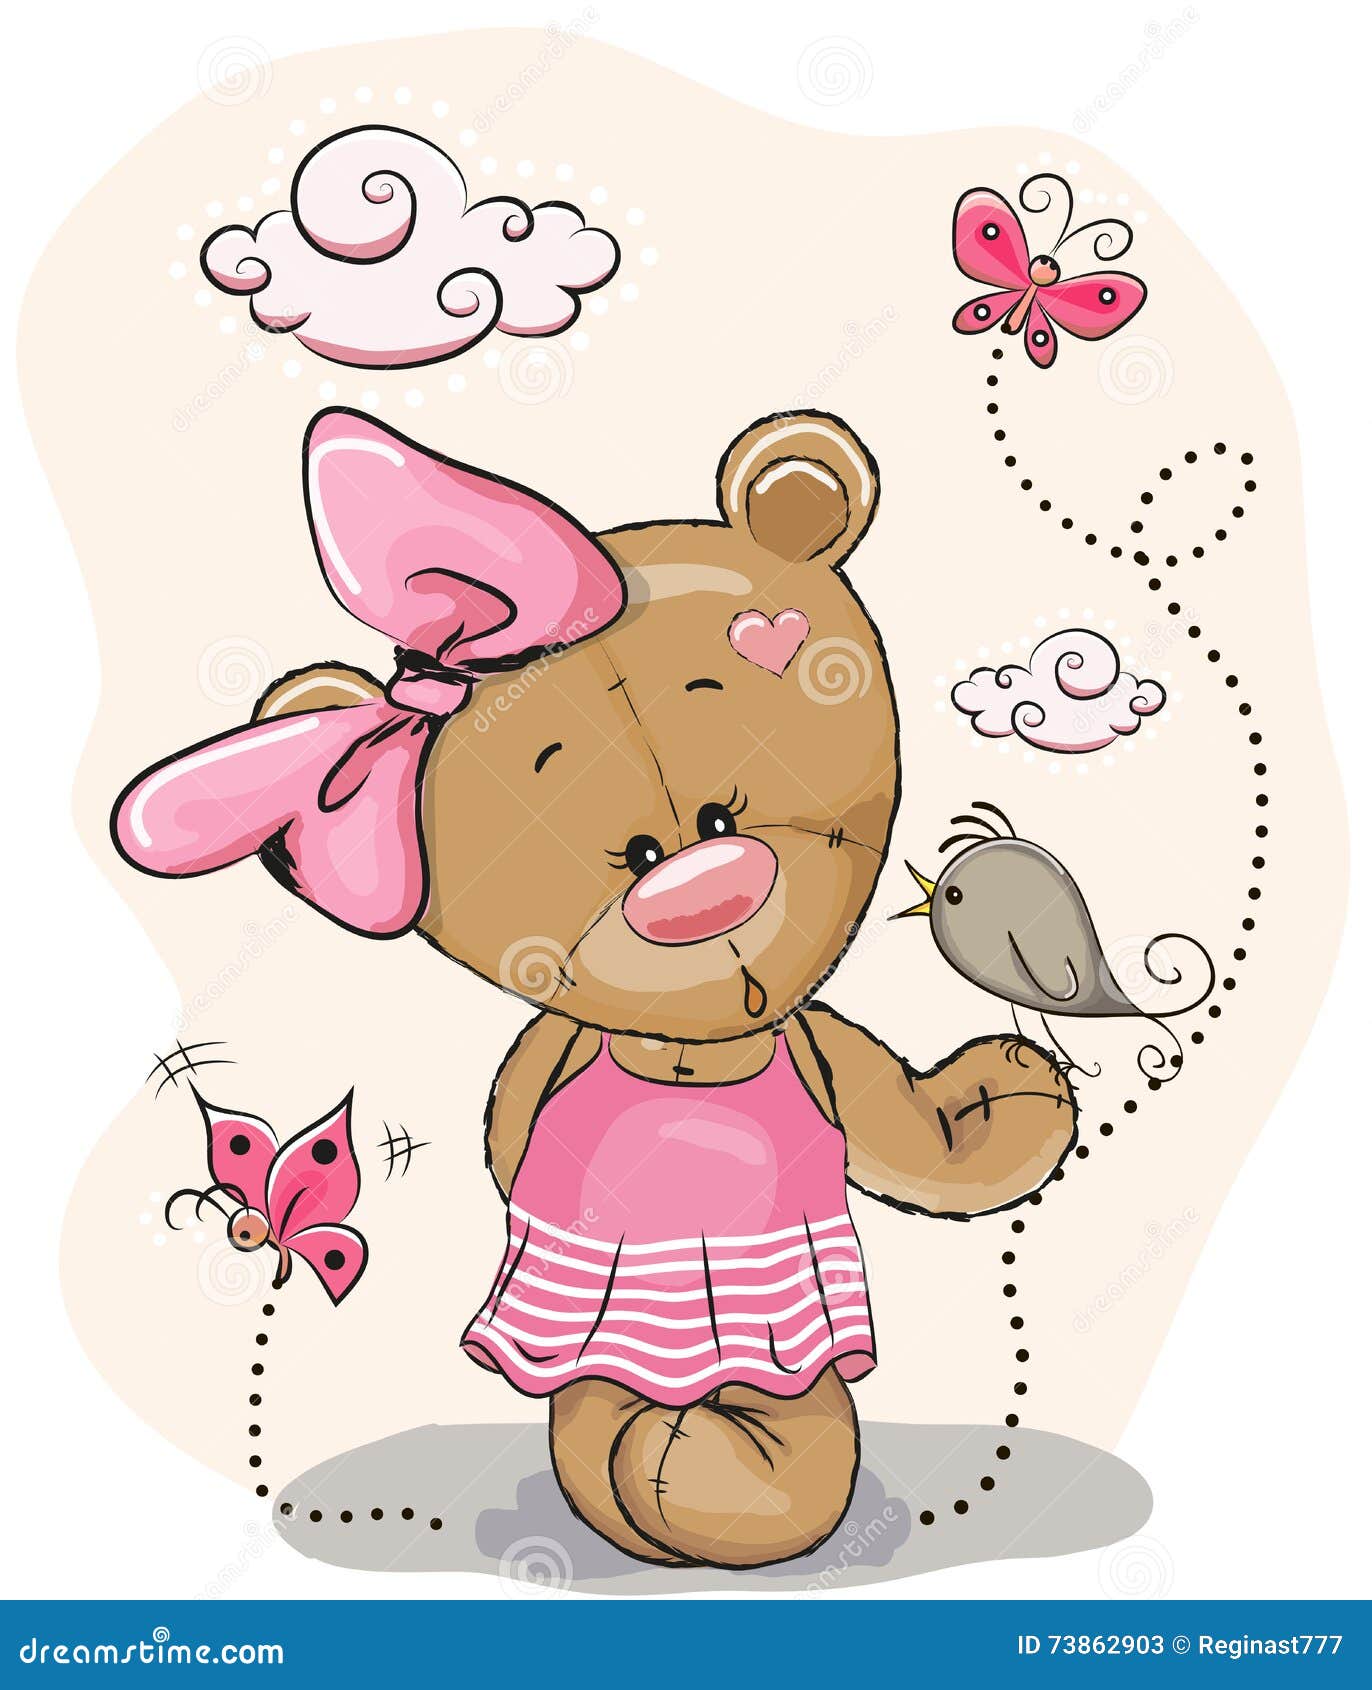 Мишка девочка картинка. Медвежонок с розовым бантиком. Девочка с мишкой. Мультяшный мишка в платье. Персонажи для метрики.